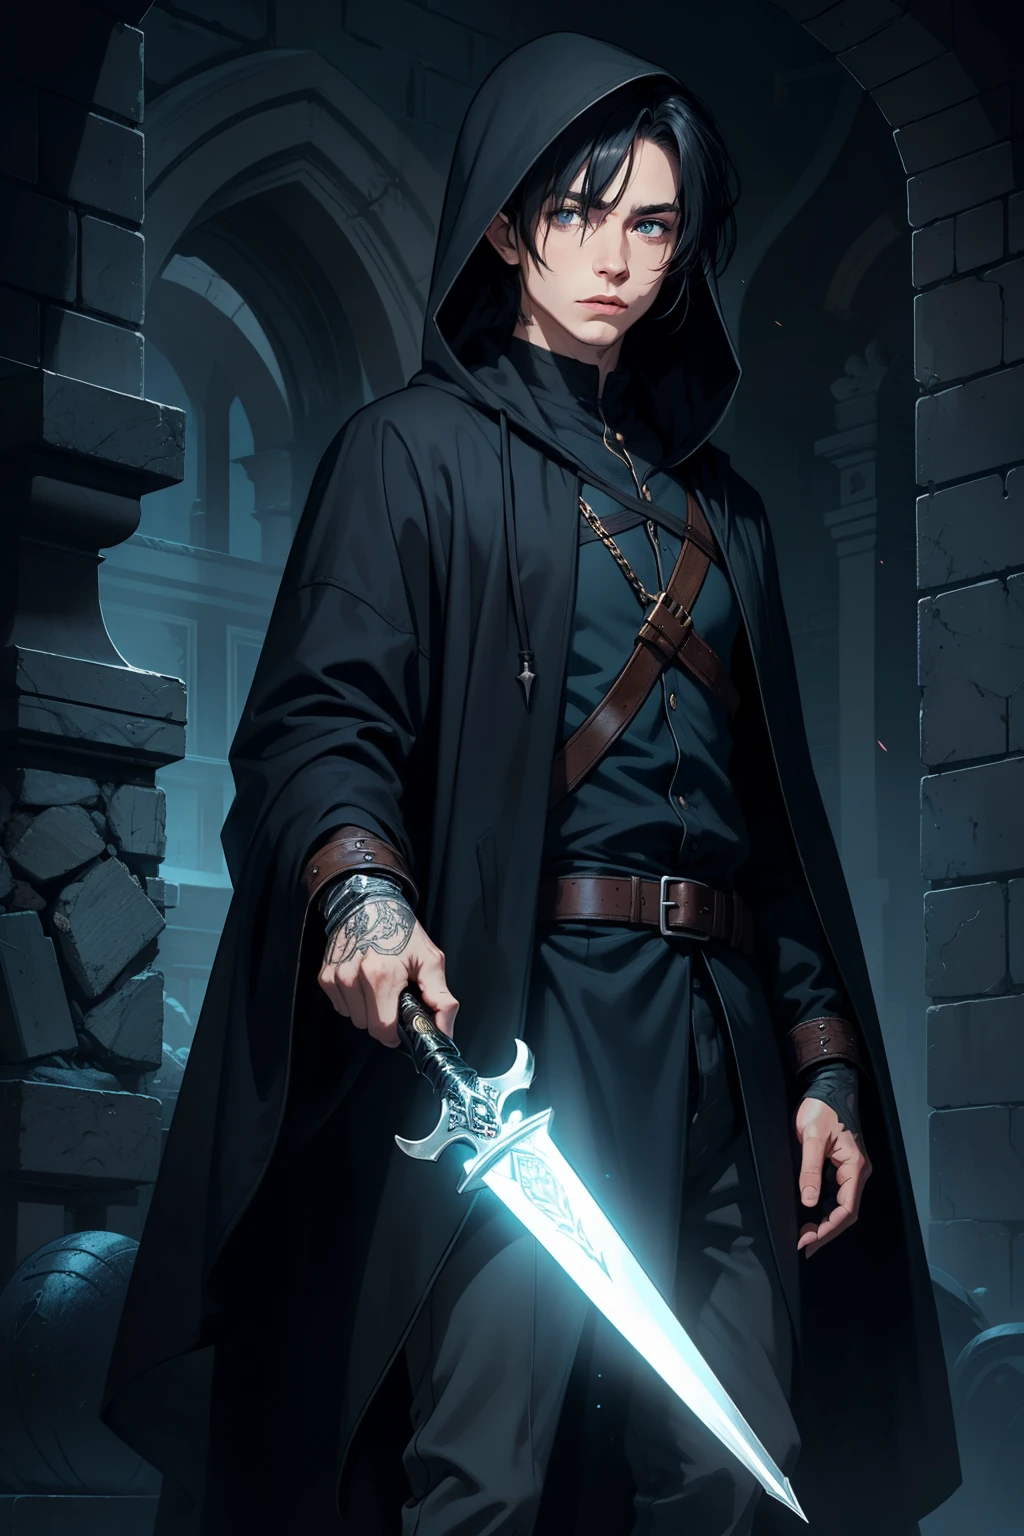 hombre misterioso elfo asesino arcano embaucador pícaro túnica oscura encapuchado, blue eyes, pelo negro corto, con una daga, lanzando un hechizo